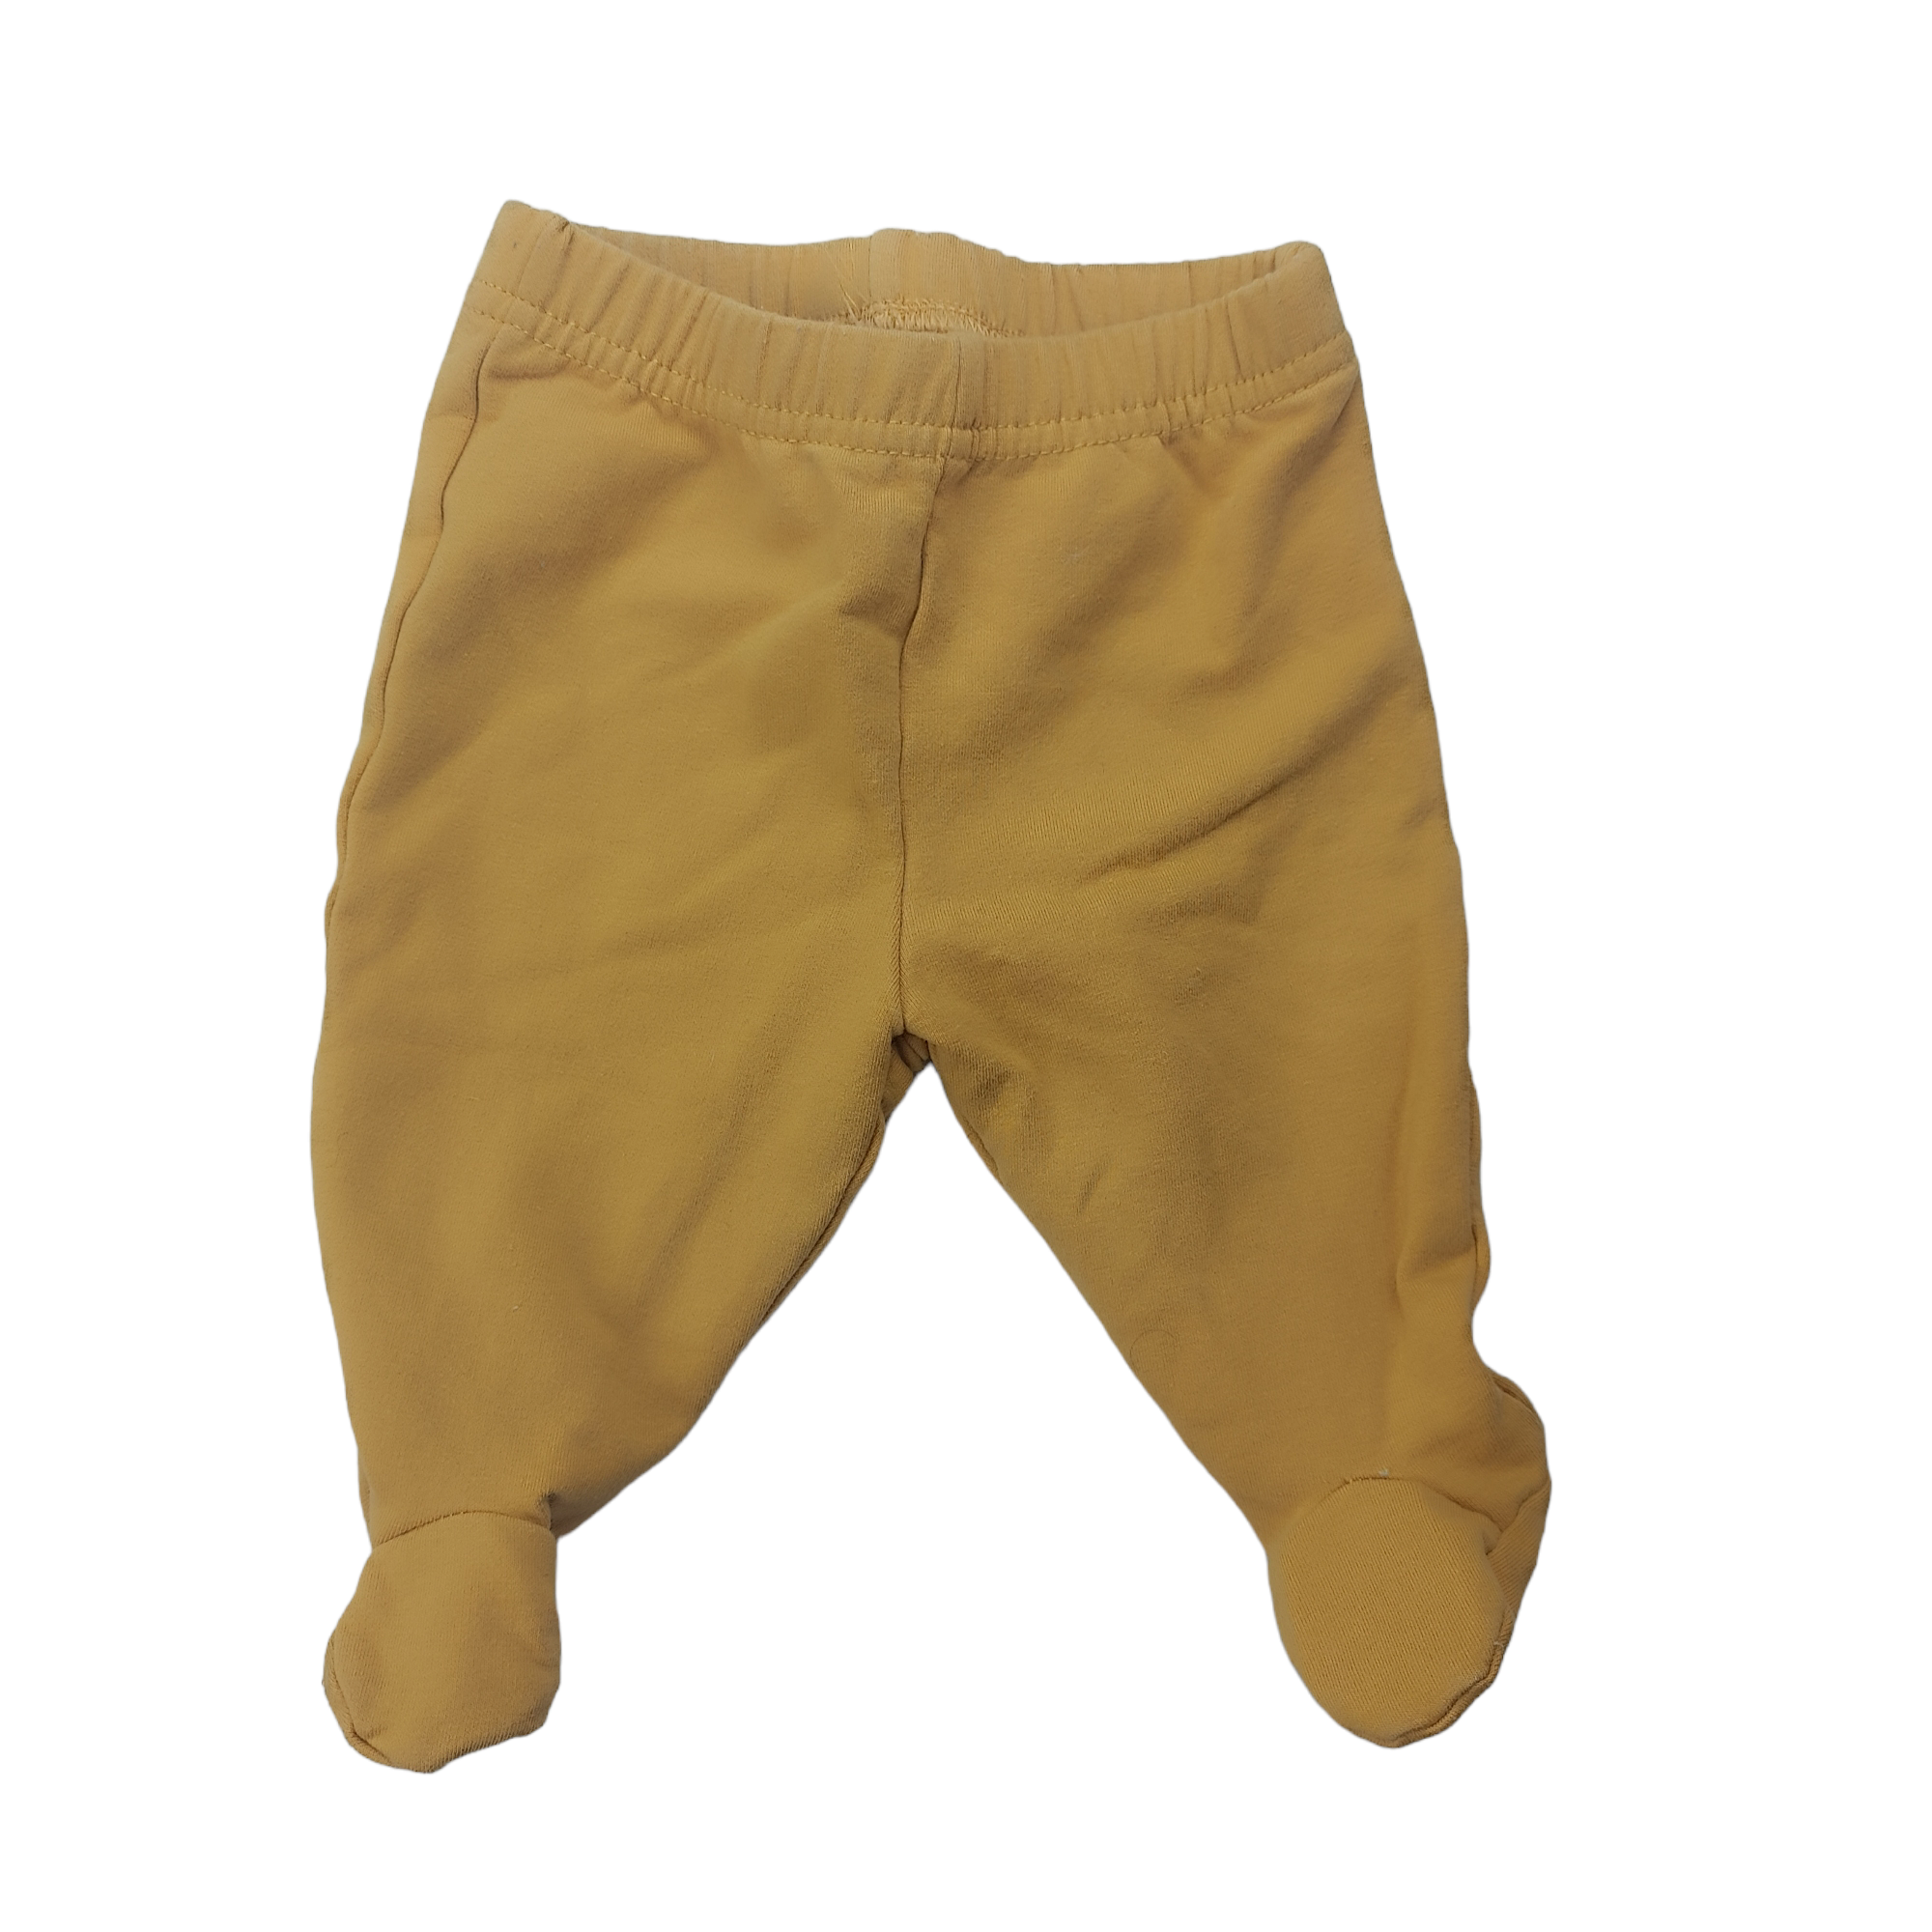 Panty de algodon amarilla